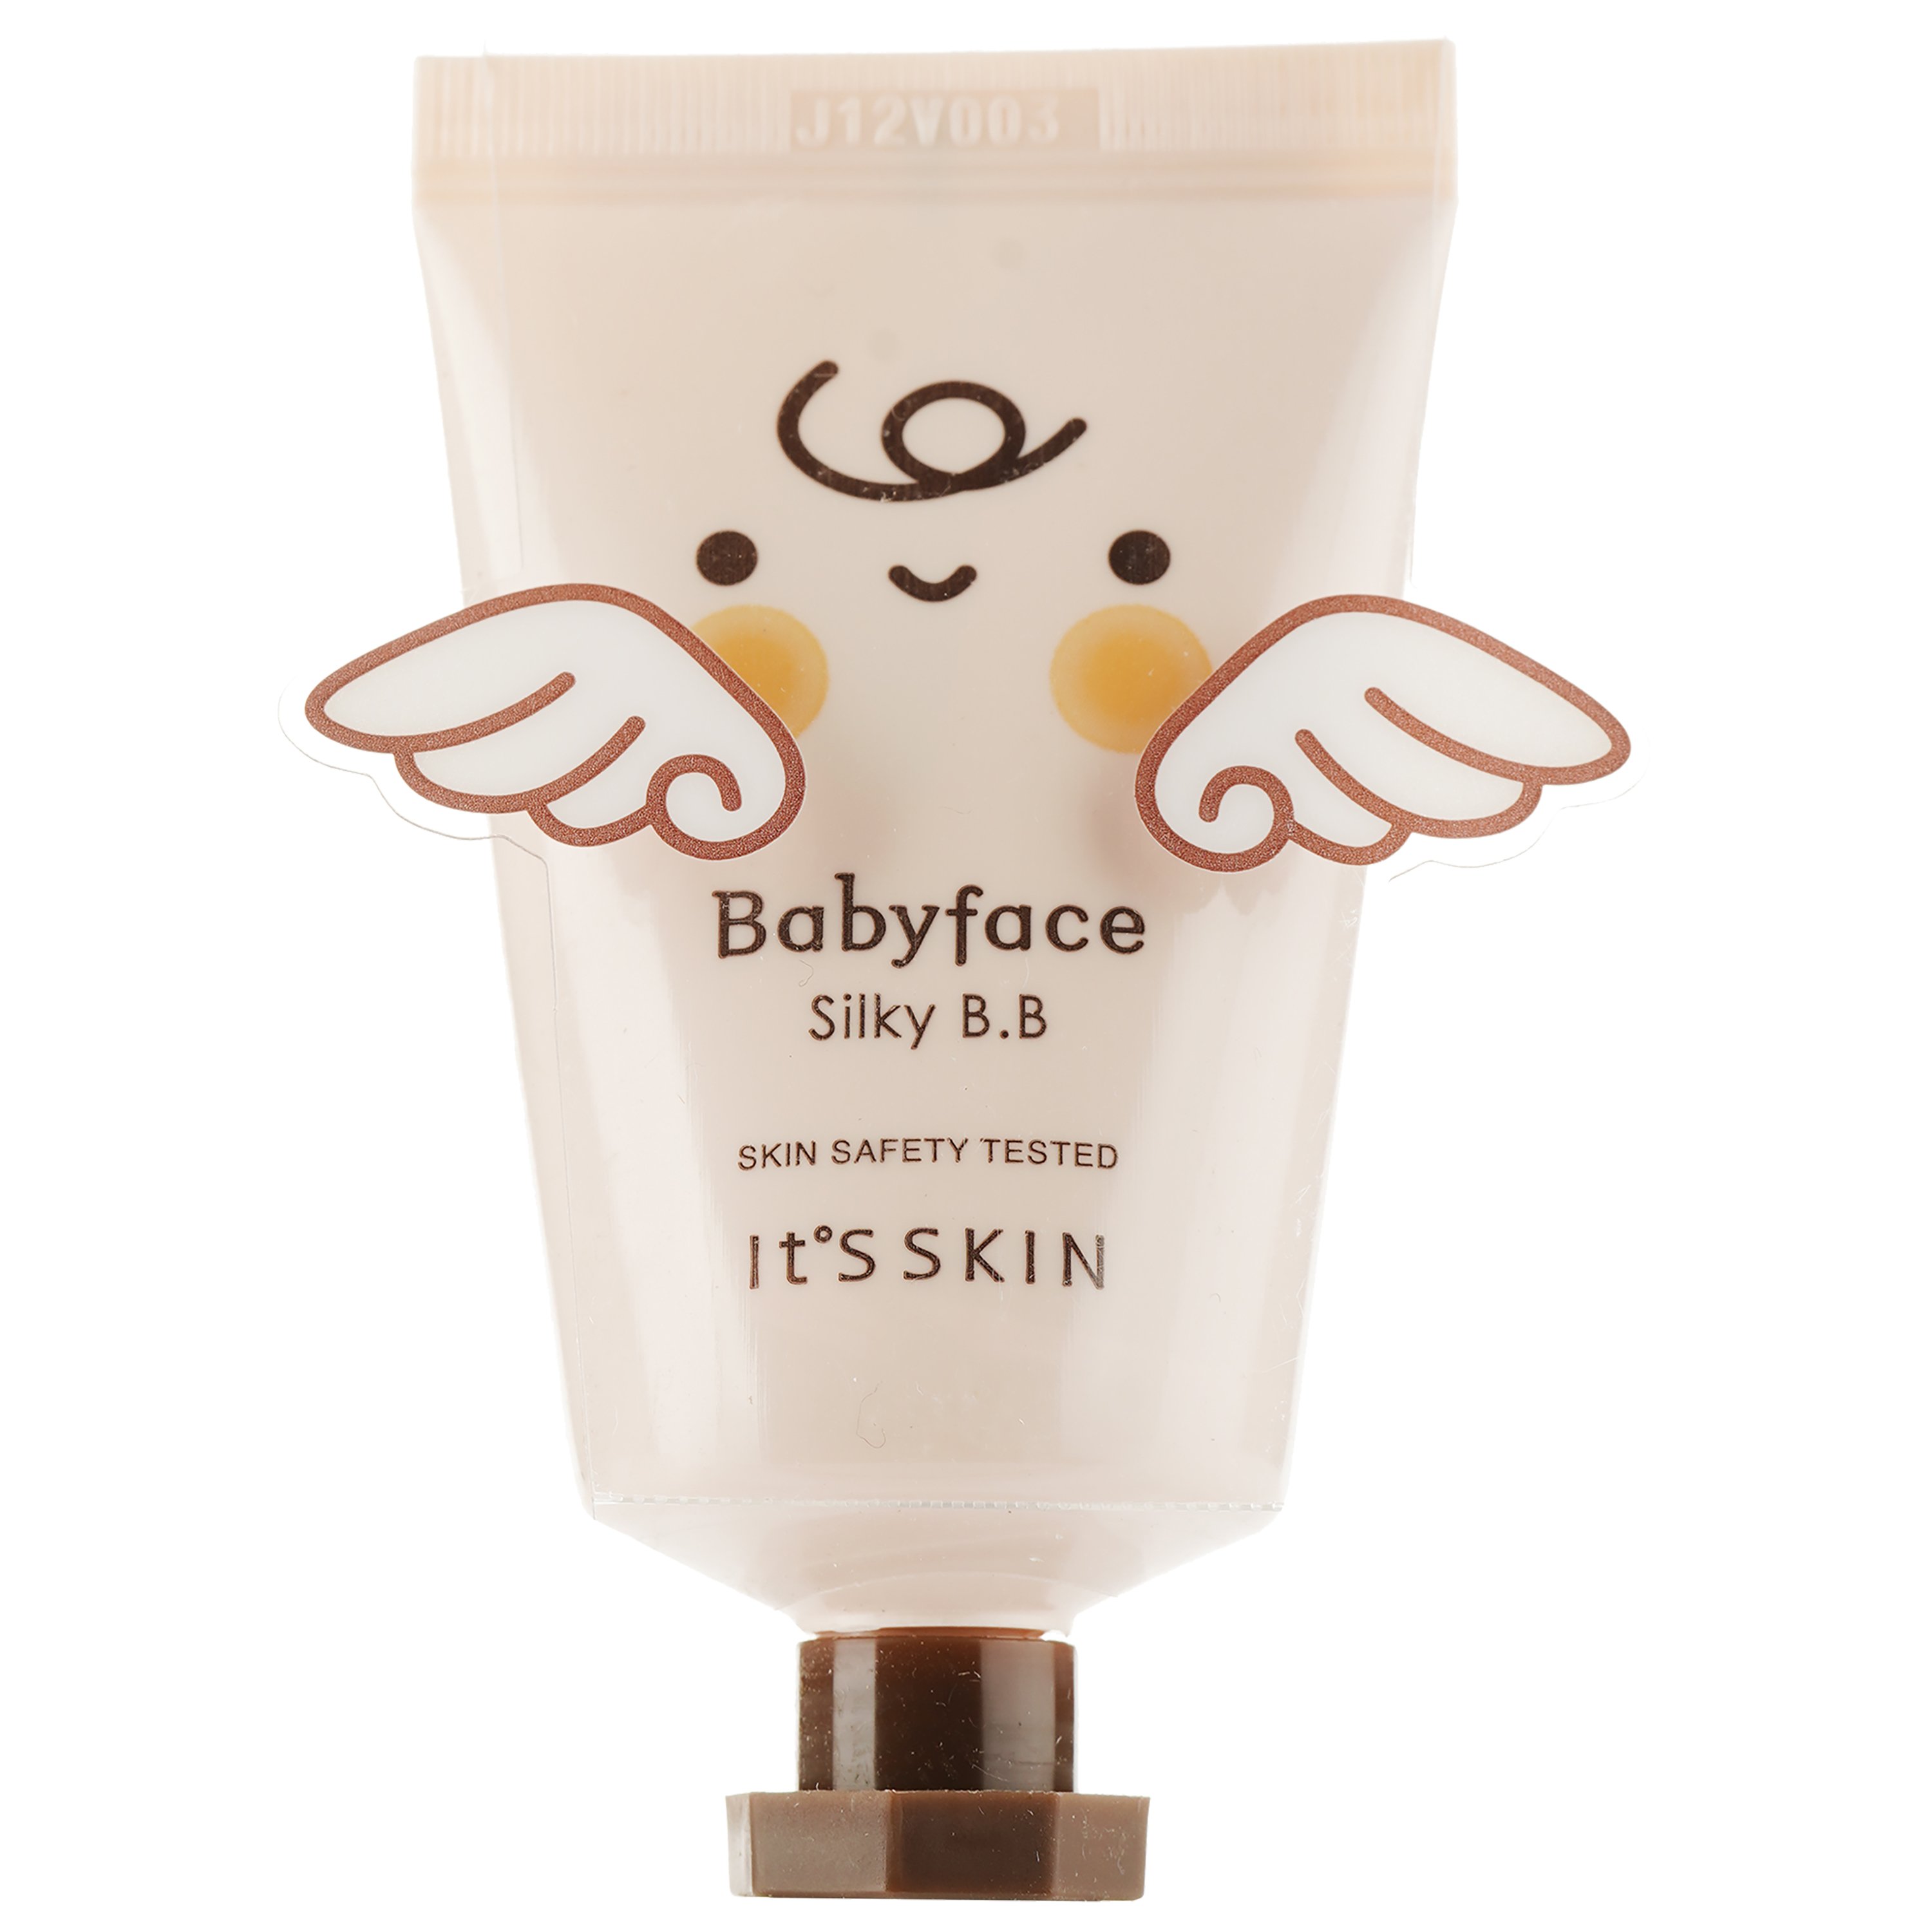 ВВ-крем для лица It's Skin Babyface Silky SPF 30, тон 2, 35 мл - фото 1